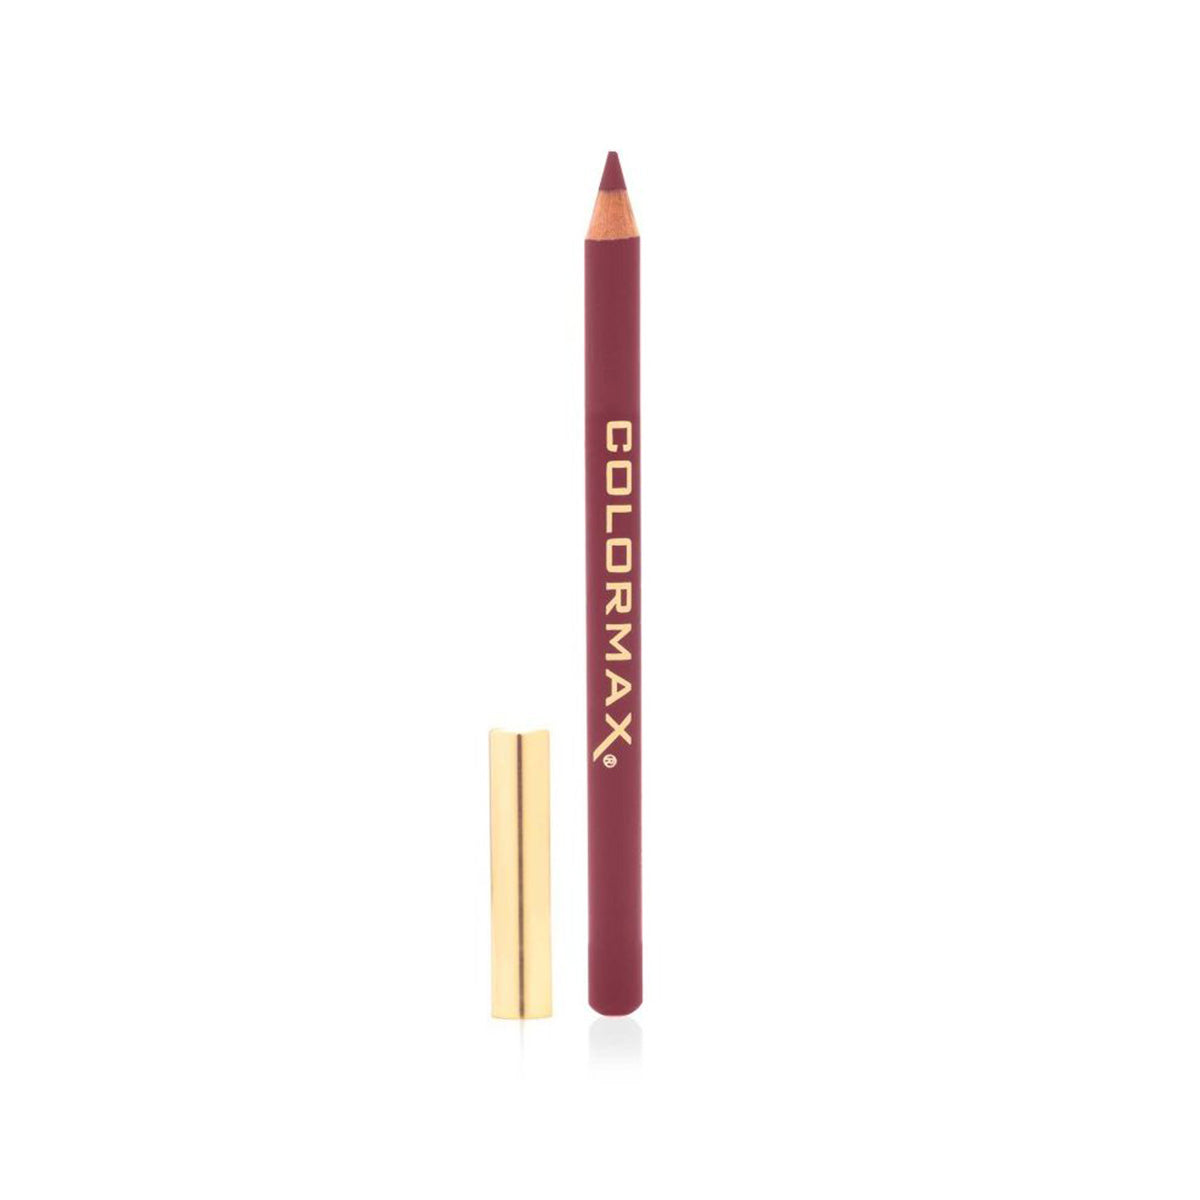 Colormax Satin Glide Lip Liner Pencil (1.14g)